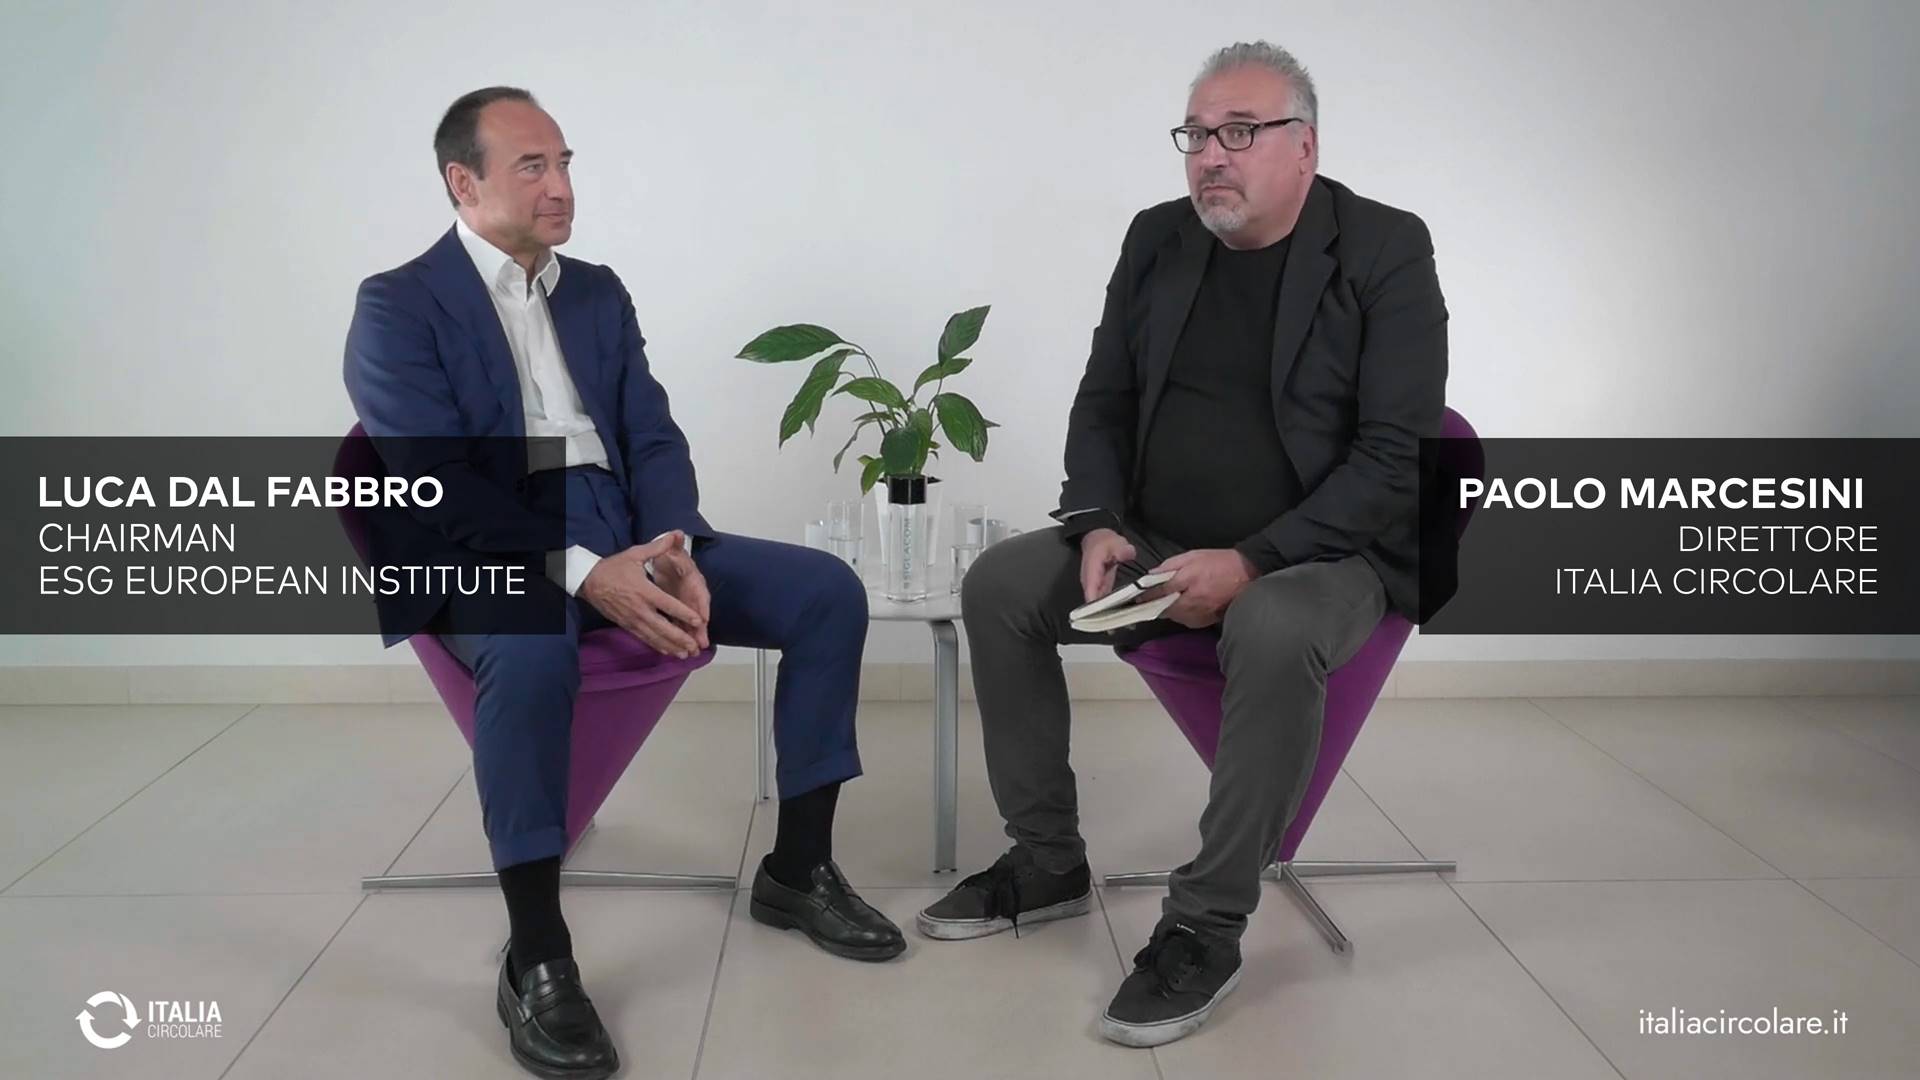 Italia Circolare<br> Paolo Marcesini talks with Luca Dal Fabbro